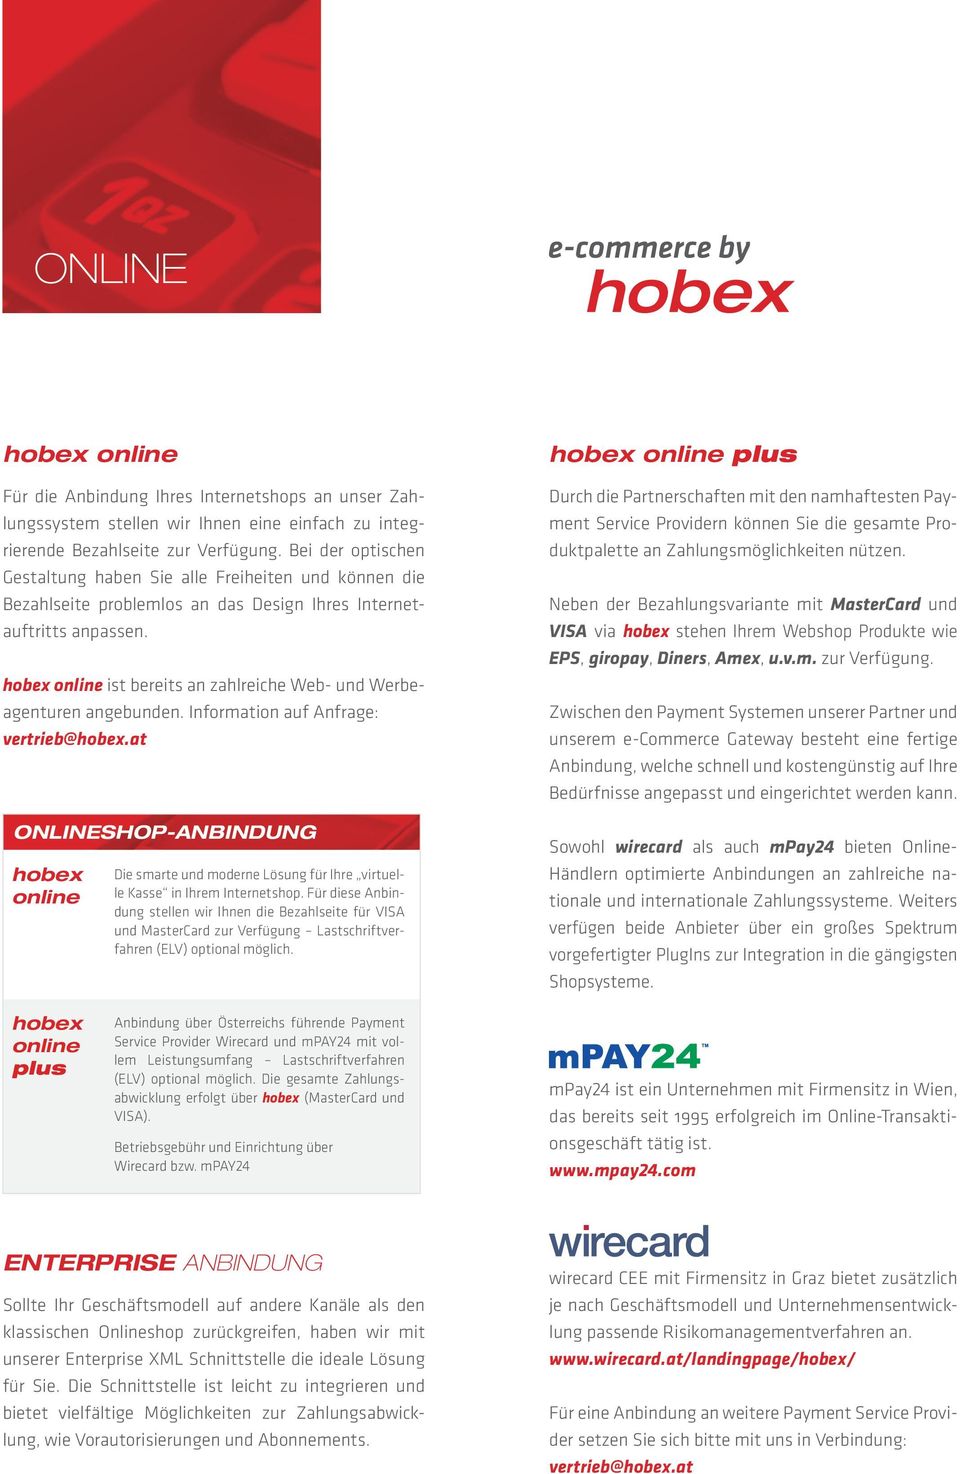 hobex online ist bereits an zahlreiche Web- und Werbeagenturen angebunden. Information auf Anfrage: vertrieb@hobex.